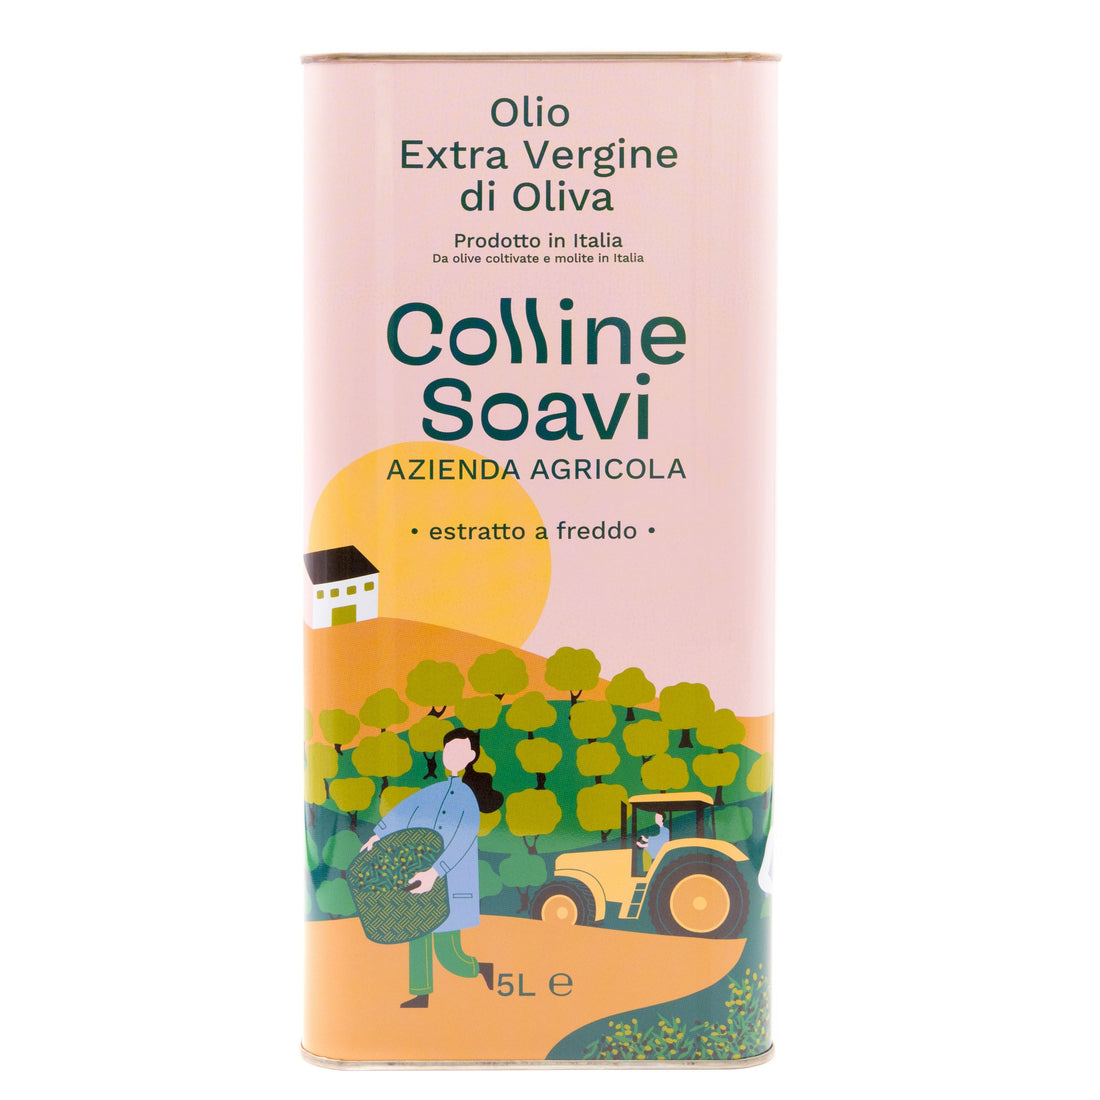 Olio Extra Vergine di Oliva Colline Soavi, Confezione di 2 Latte da 5L - 2022/23